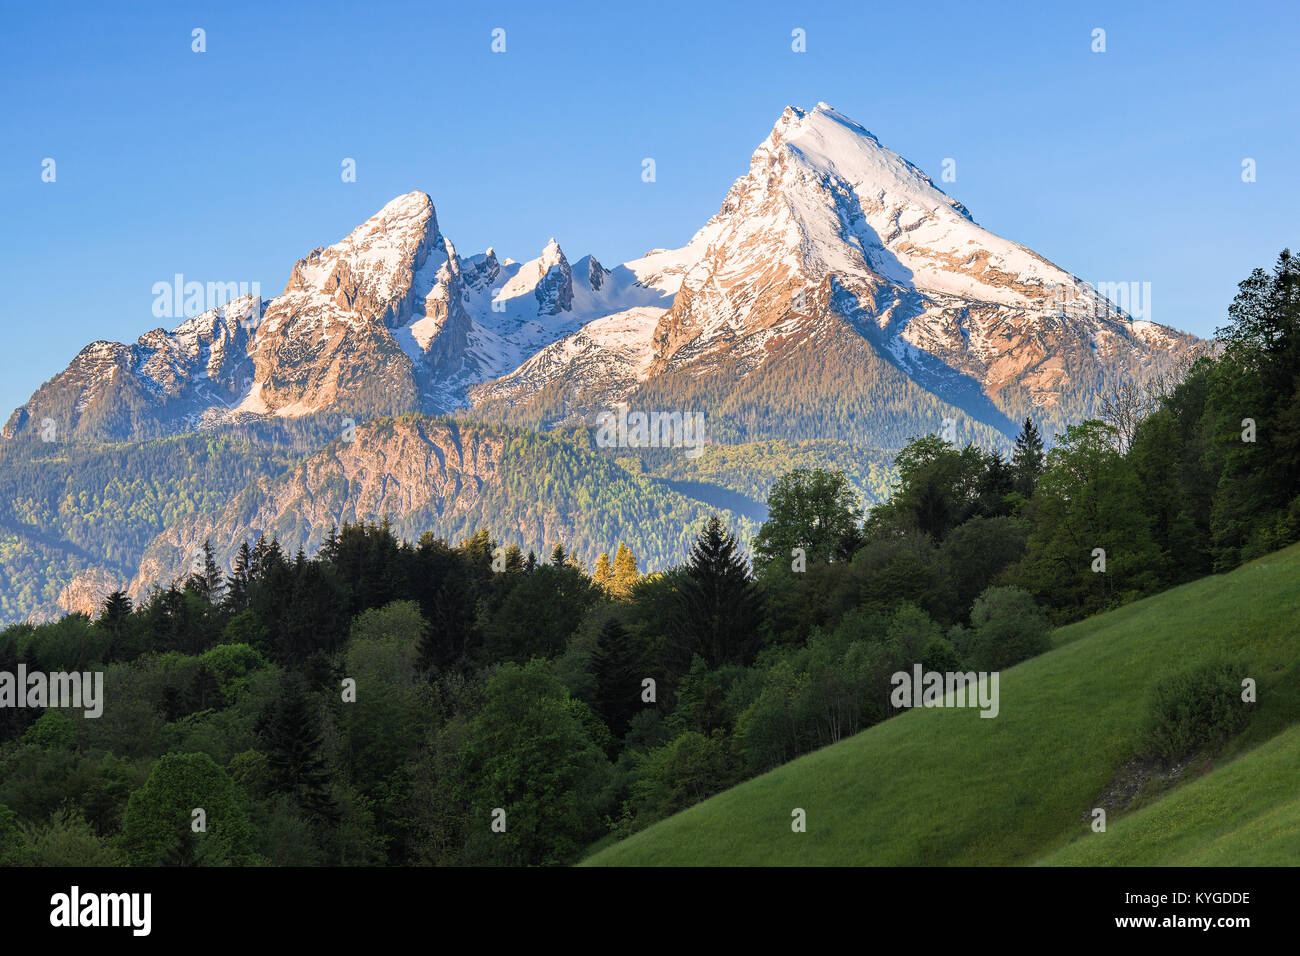 Couronné de neige sommets du mont Watzmann dans le célèbre parc national de Bavière Berchtesgaden dans les Alpes allemandes Banque D'Images